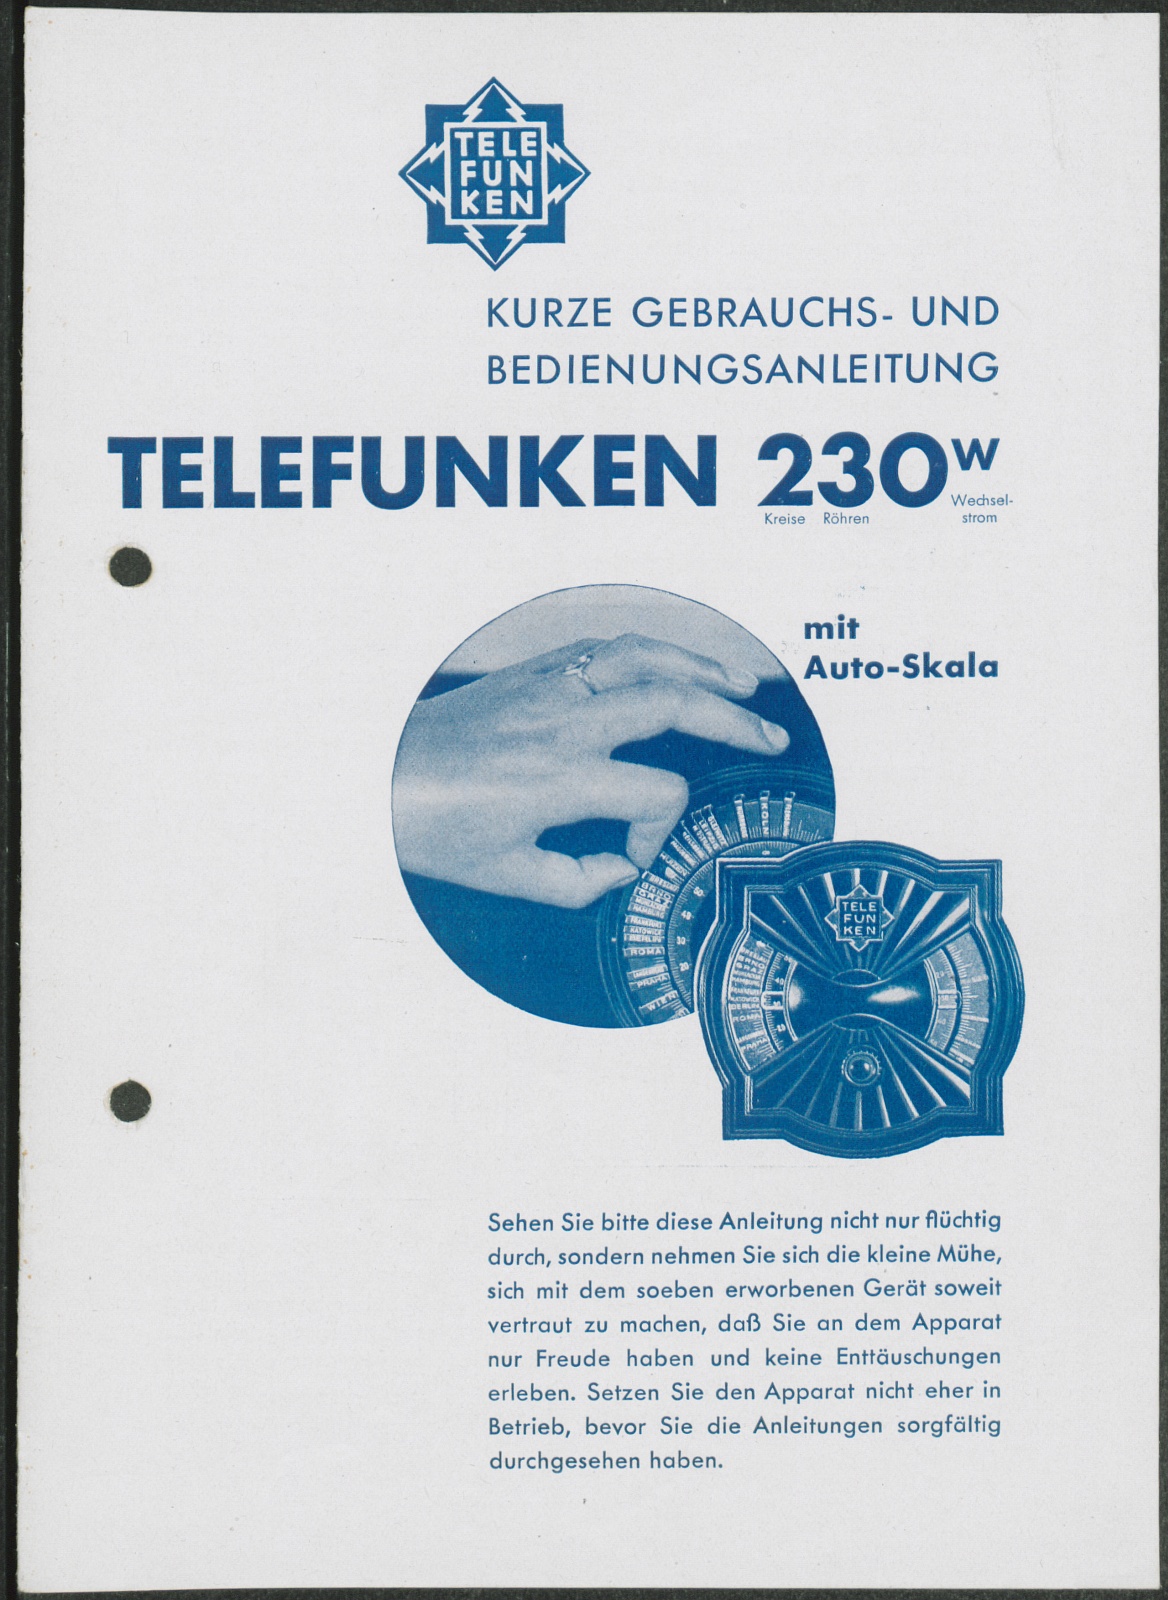 Bedienungsanleitung: Kurze Gebrauchs- und Bedienungsanleitung Telefunken 230 W mit Auto-Skala. (Stiftung Deutsches Technikmuseum Berlin CC0)